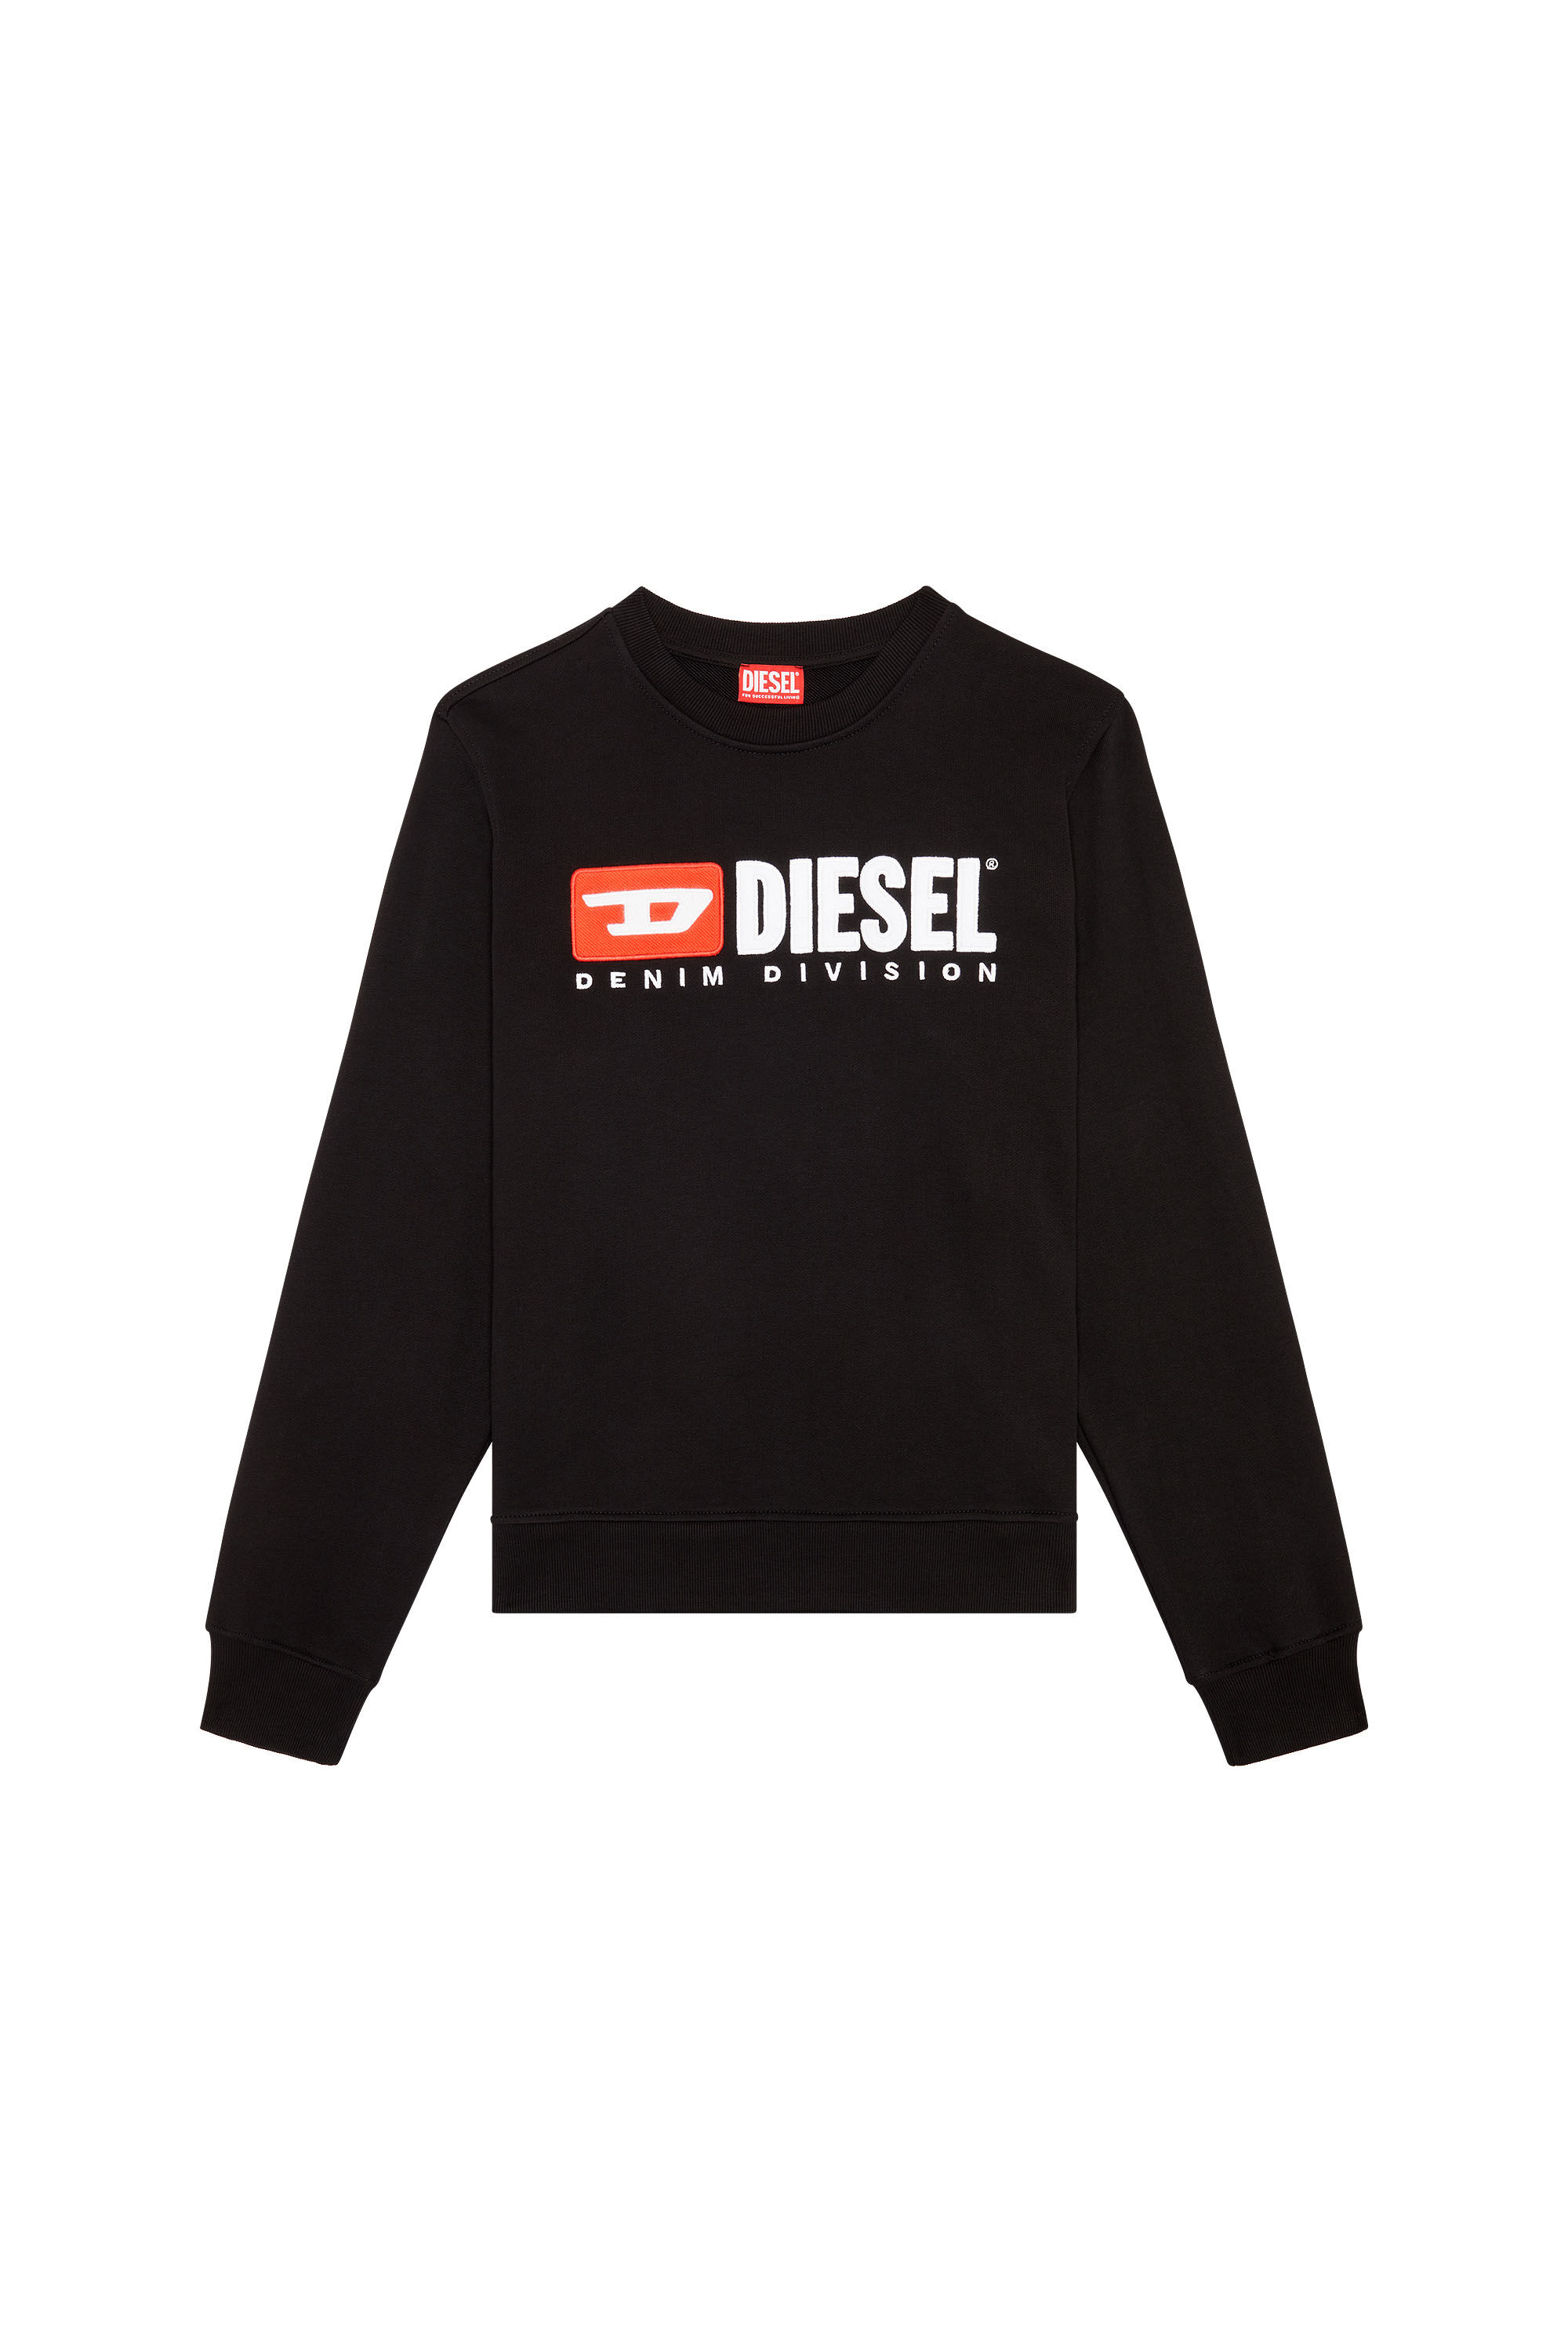 Diesel - S-GINN-DIV, Nero - Image 2